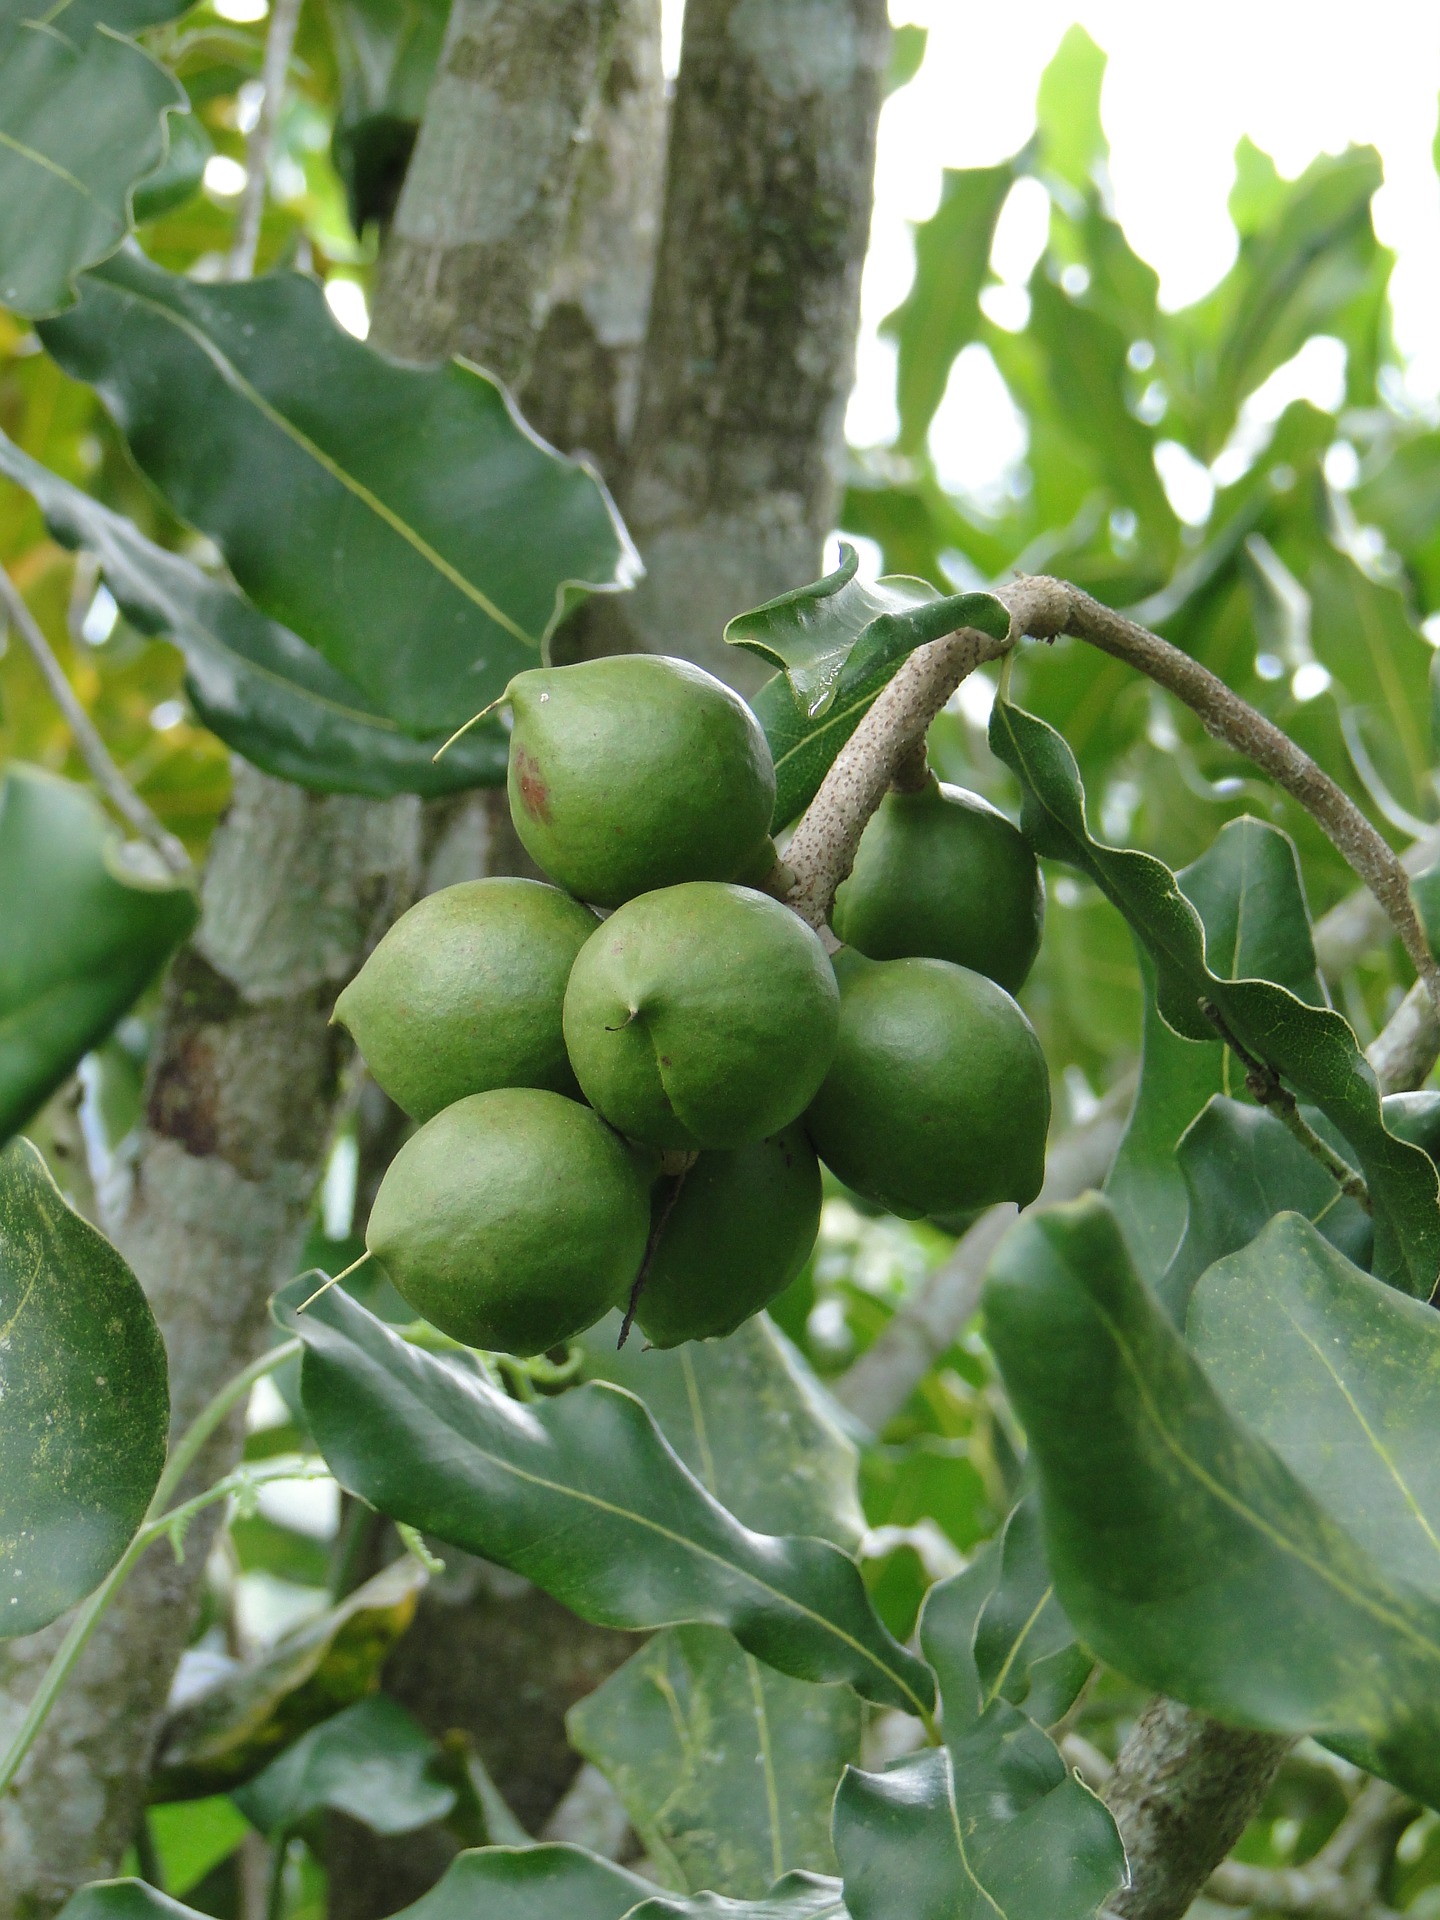 Queensland nuts